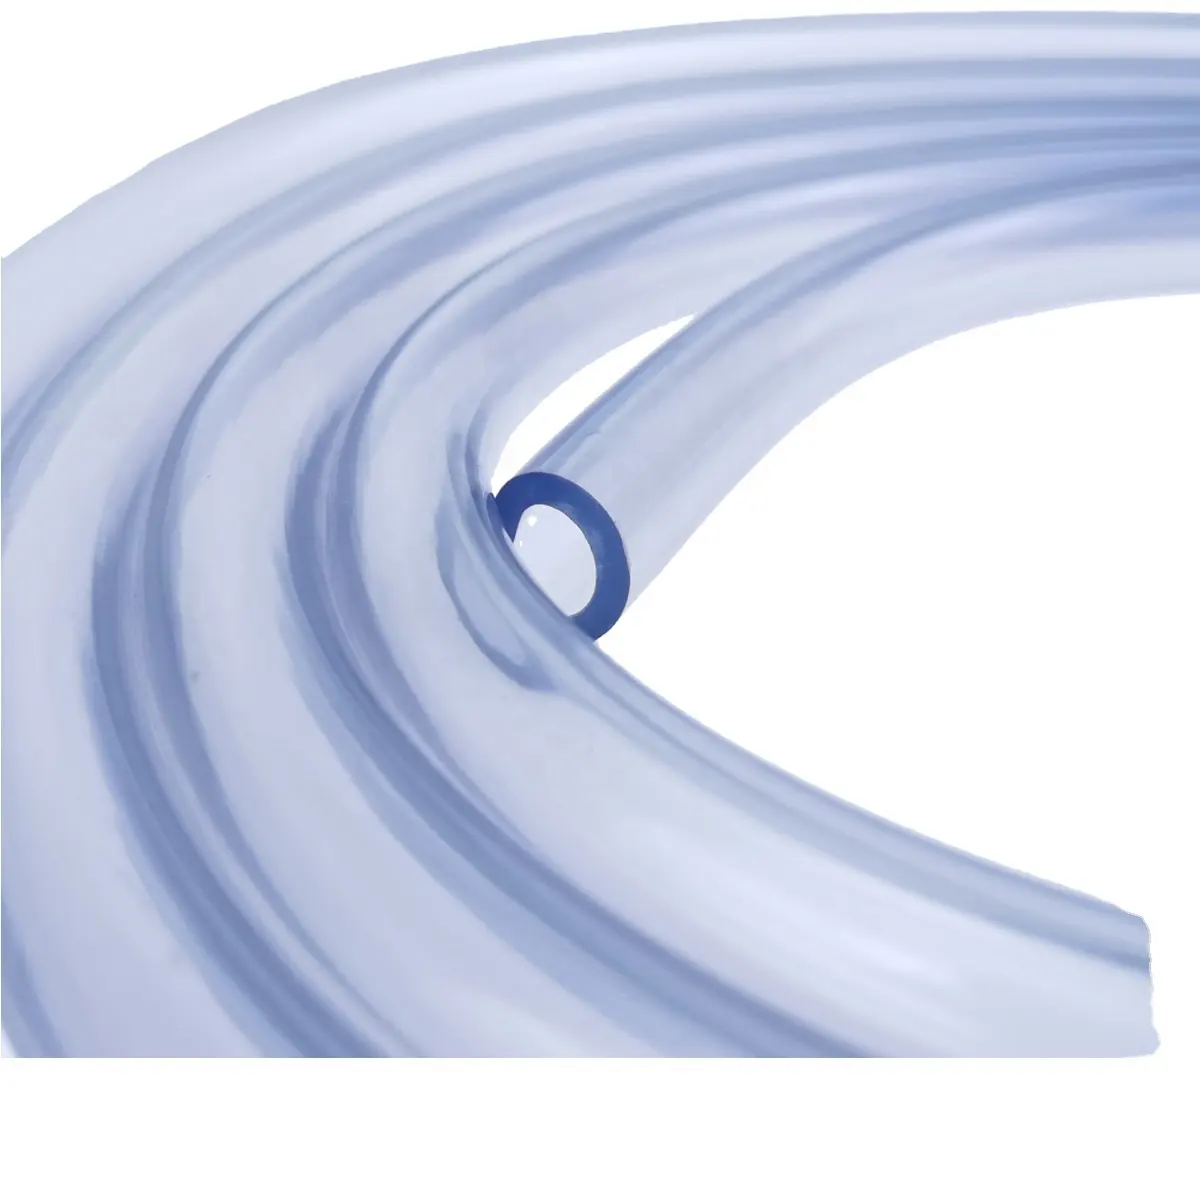 CNJG 고품질 5/16 "PVC 투명 비닐 튜브 식품 학년 PVC 물 호스 Rohs 등급 안전 플라스틱 호스 급수